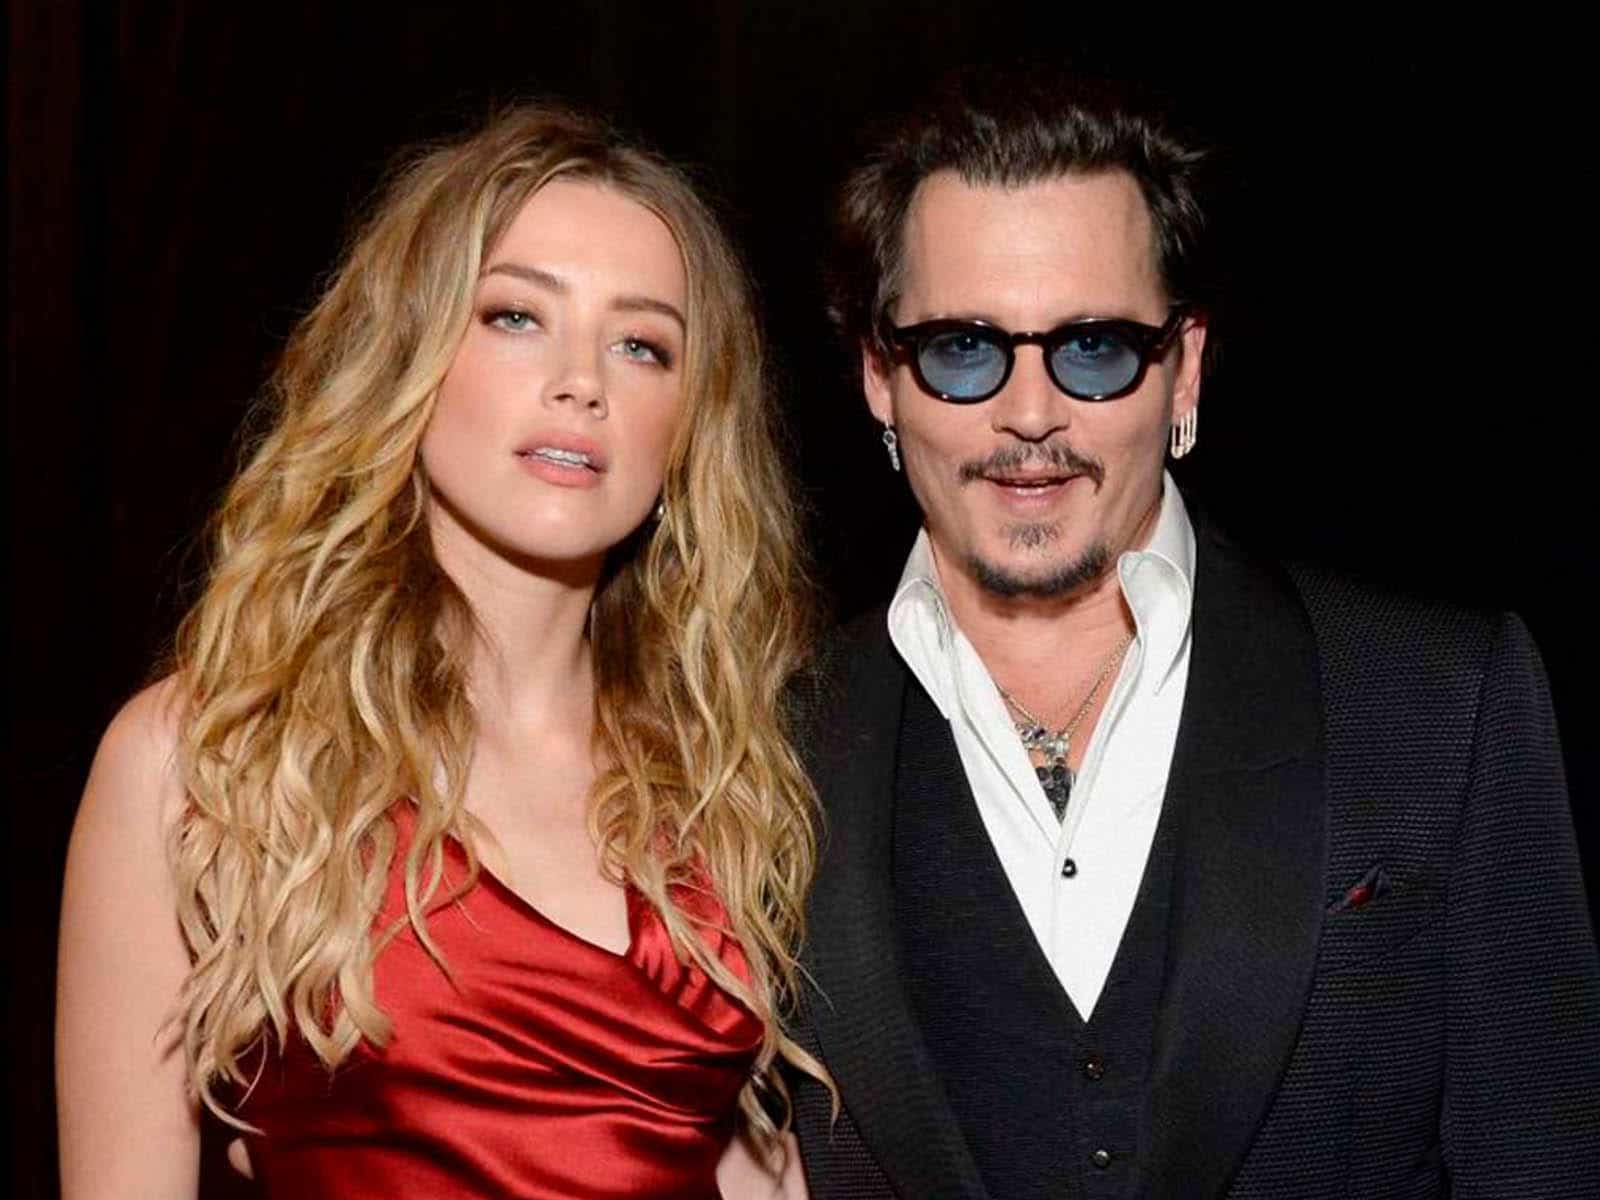 Jurados del juicio de Johnny Depp contra Amber Heard se reúnen por segunda vez para decidir el veredicto